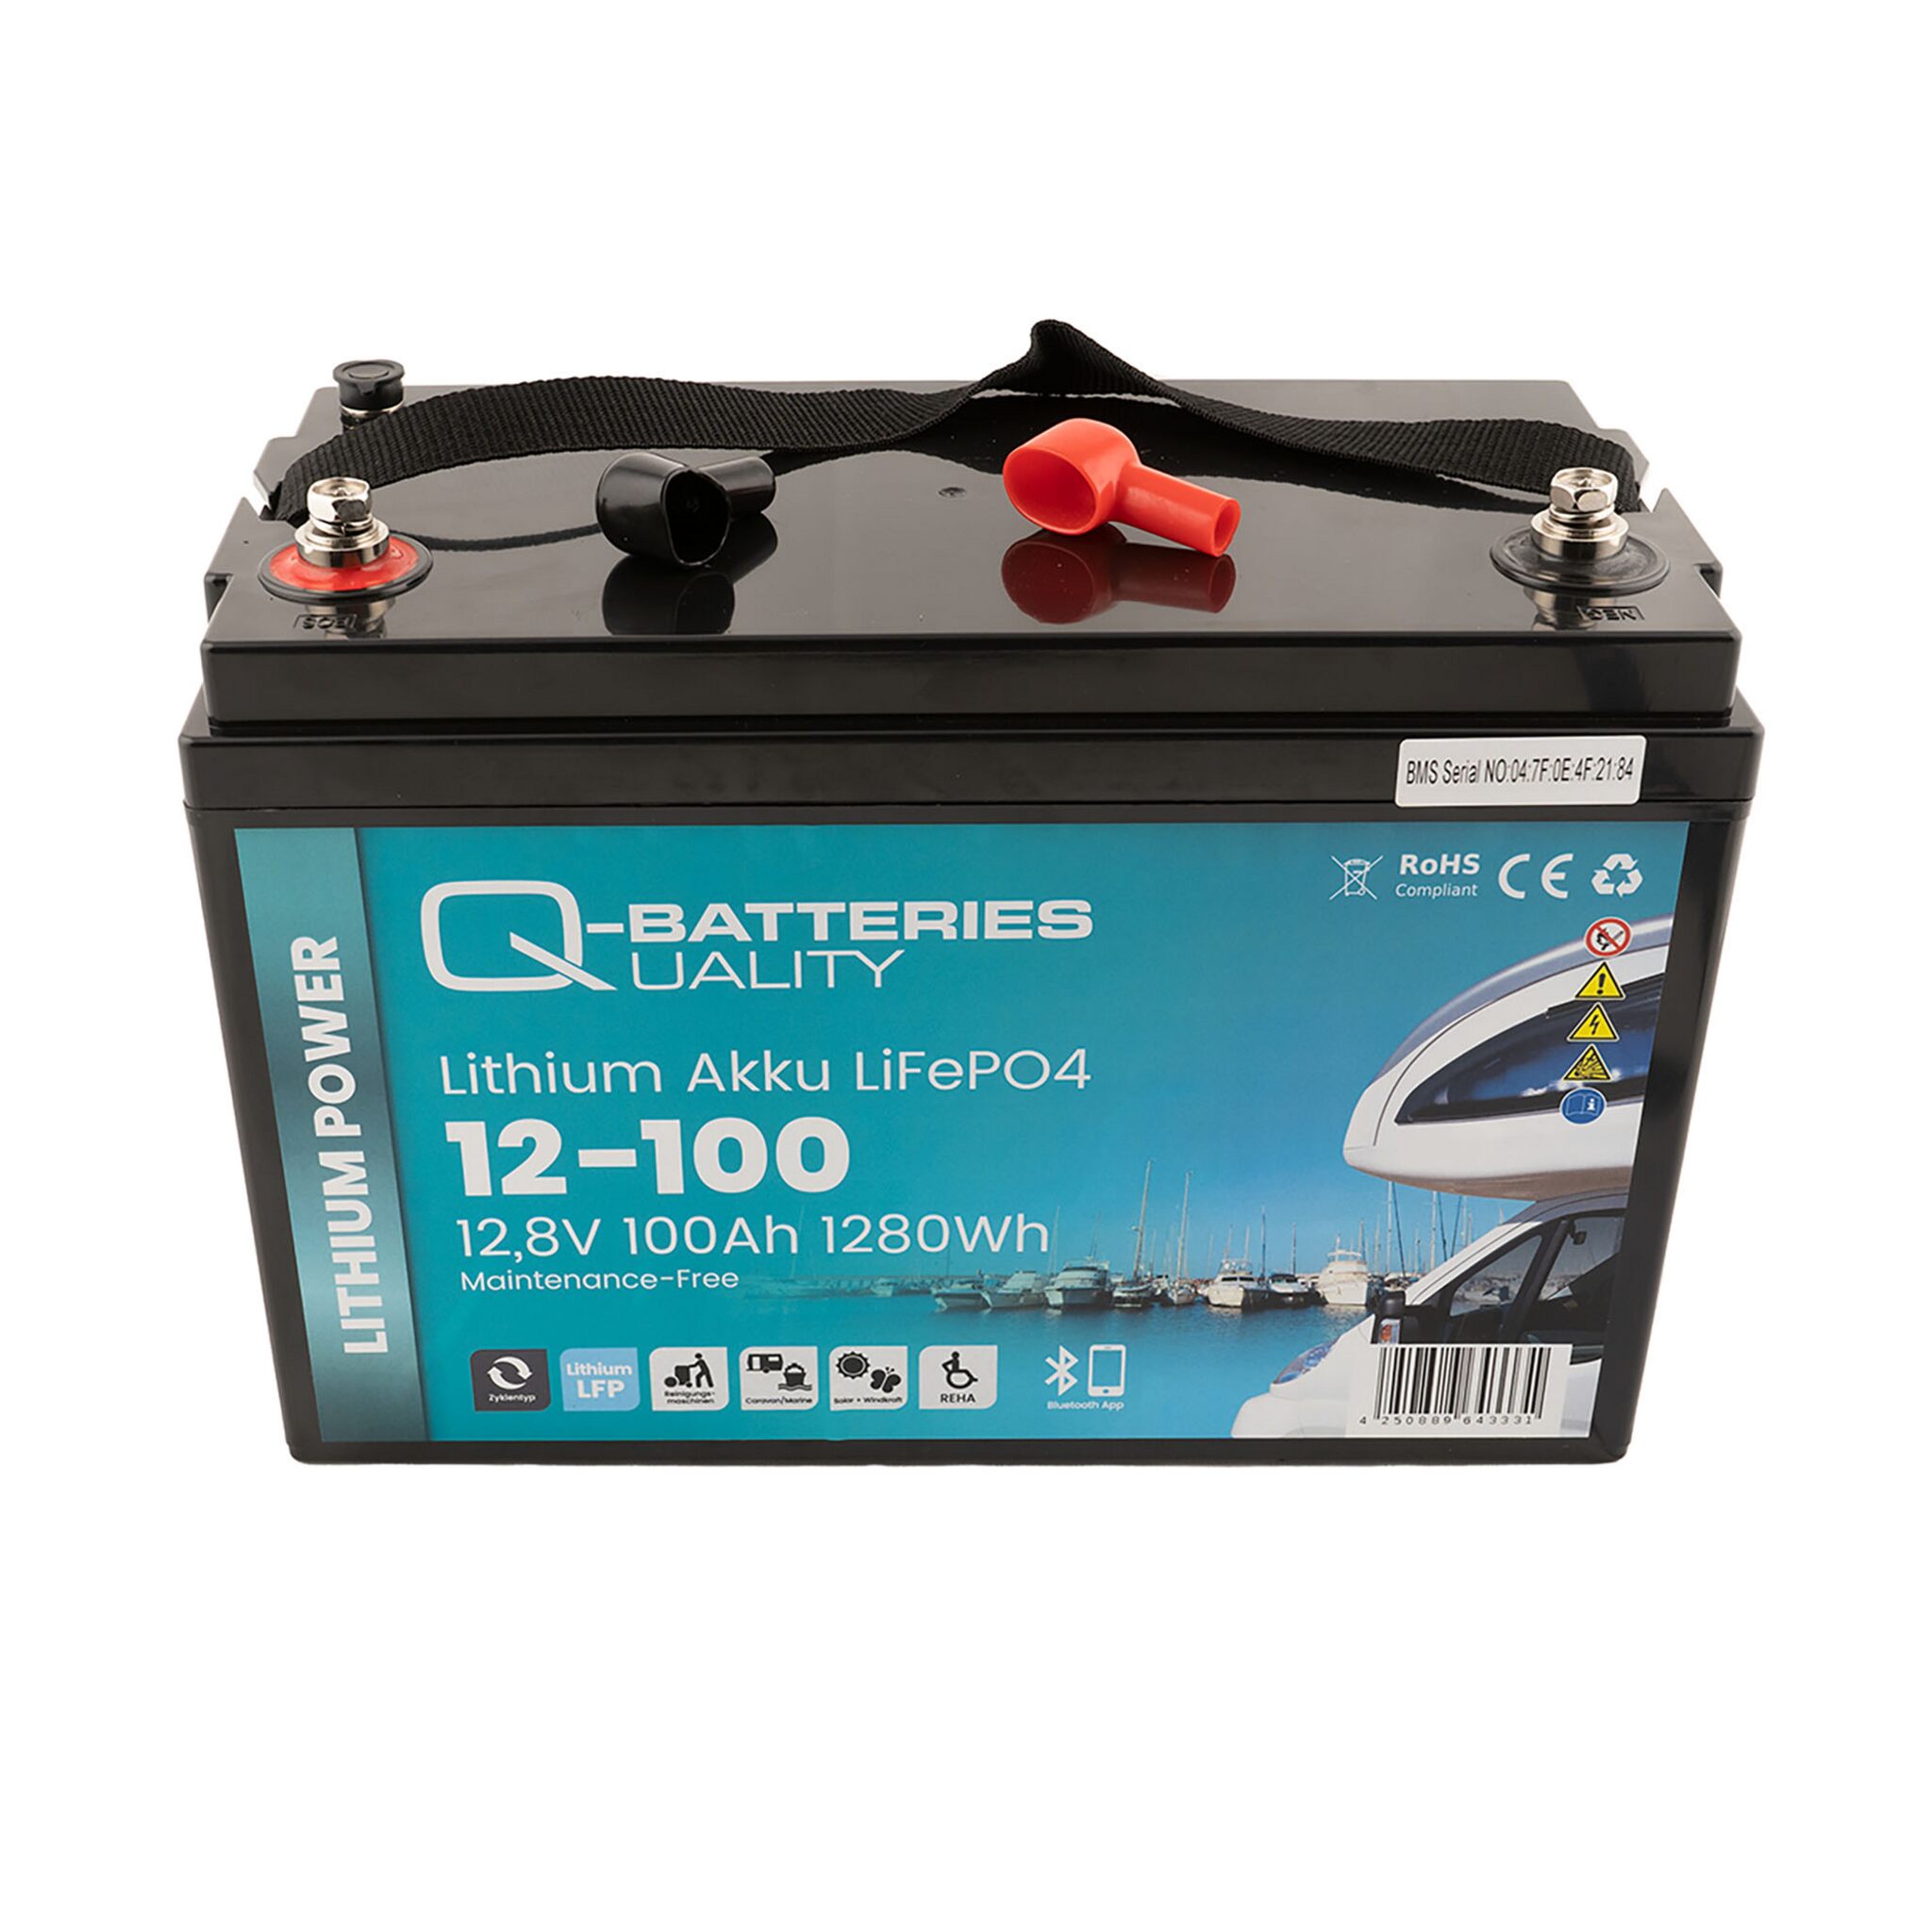 Q-Batteries Lithium Akku LiFePO4